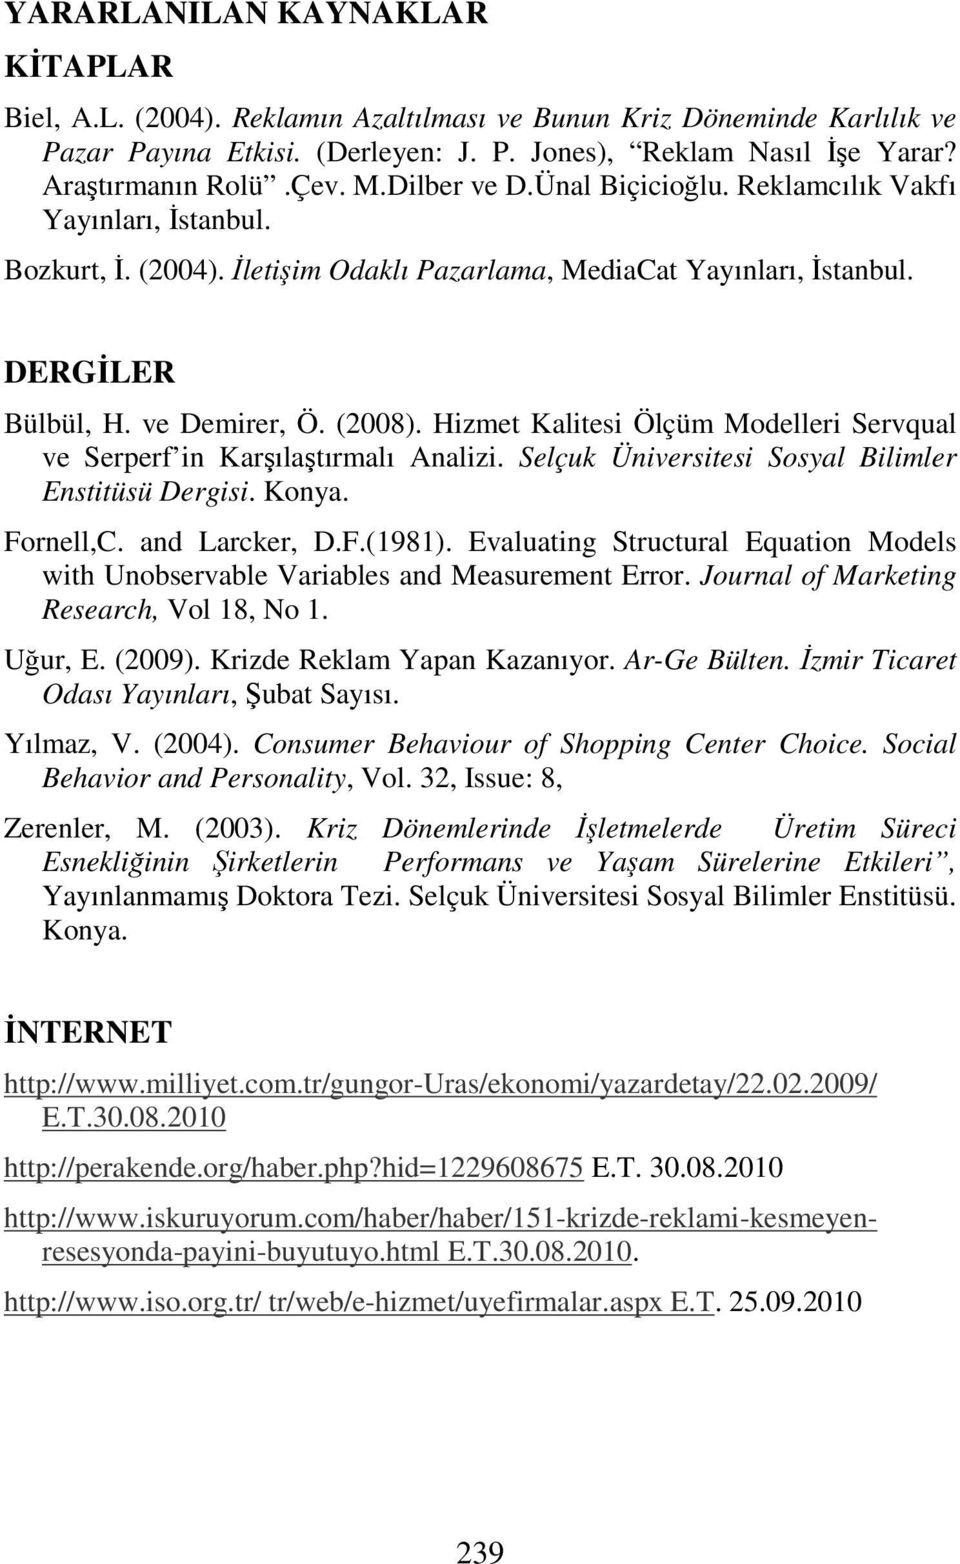 Hizmet Kalitesi Ölçüm Modelleri Servqual ve Serperf in Karşılaştırmalı Analizi. Selçuk Üniversitesi Sosyal Bilimler Enstitüsü Dergisi. Konya. Fornell,C. and Larcker, D.F.(1981).